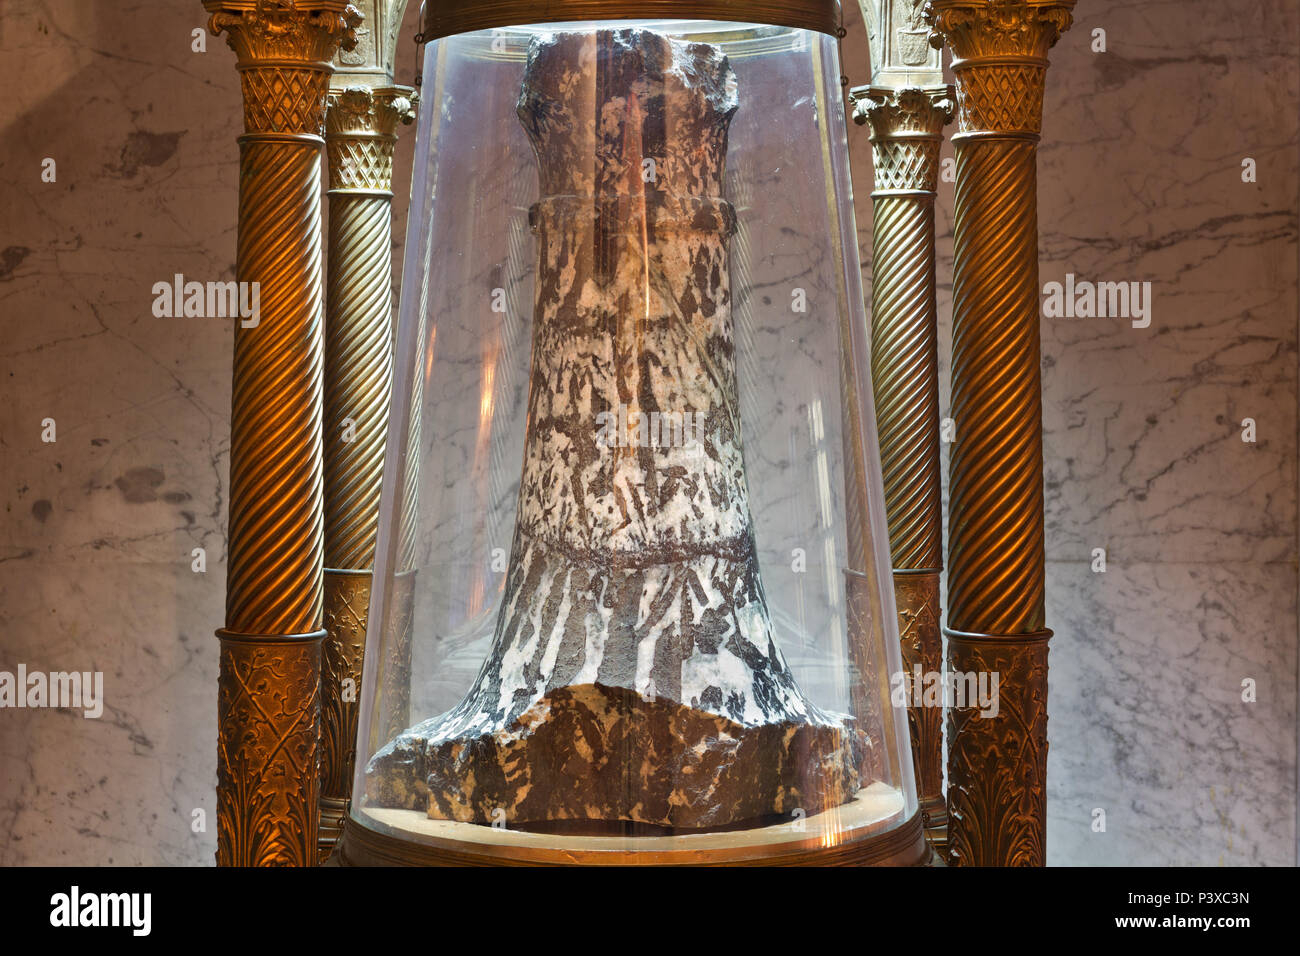 Die Heilige Säule (nach der Tradition ist es die Säule, an die Christus gebunden wurde, um geißelt zu werden) - Kapelle des Heiligen Zeno - Santa Prassede - Rom Stockfoto